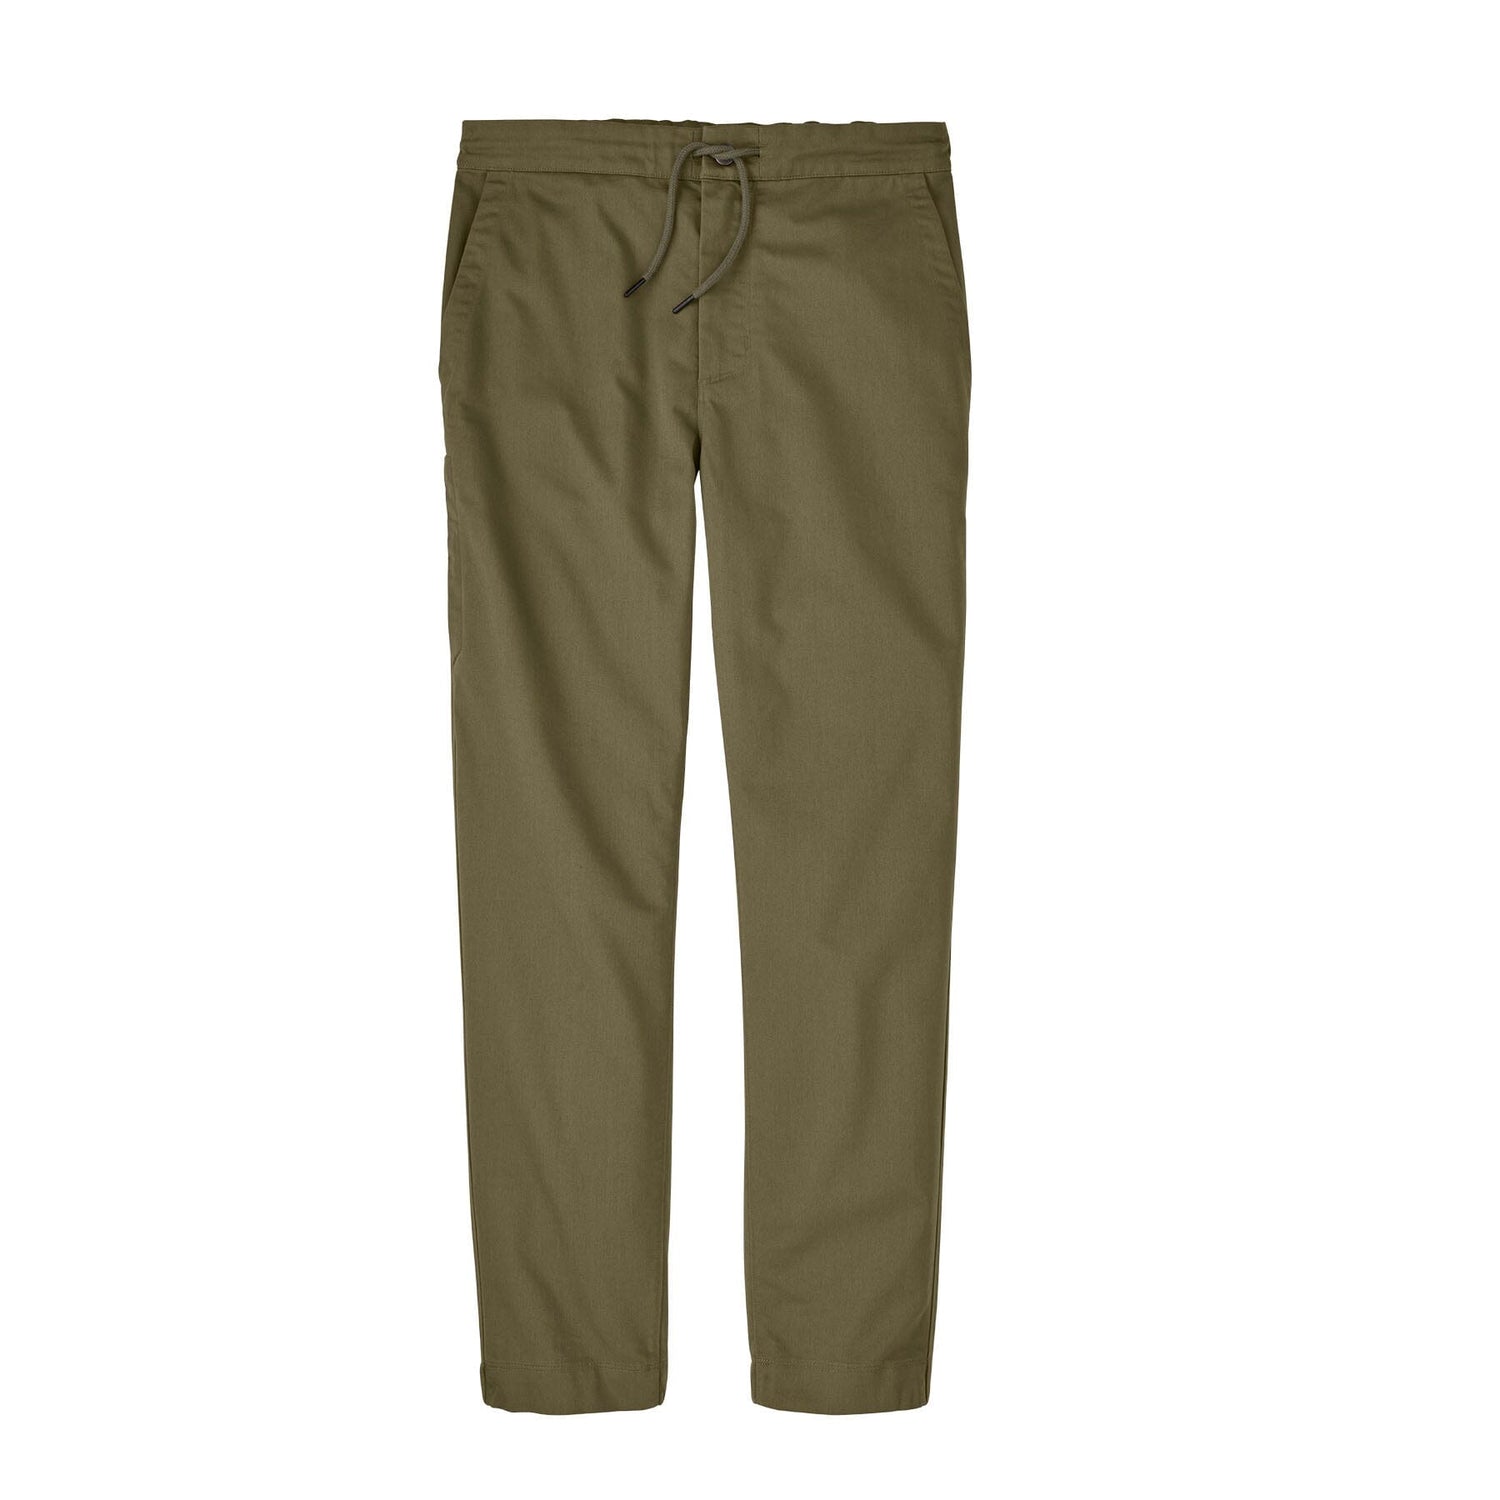 Patagonia M's Twill Traveler Pants - Organic Cotton & Polyester Sage Khaki Pants